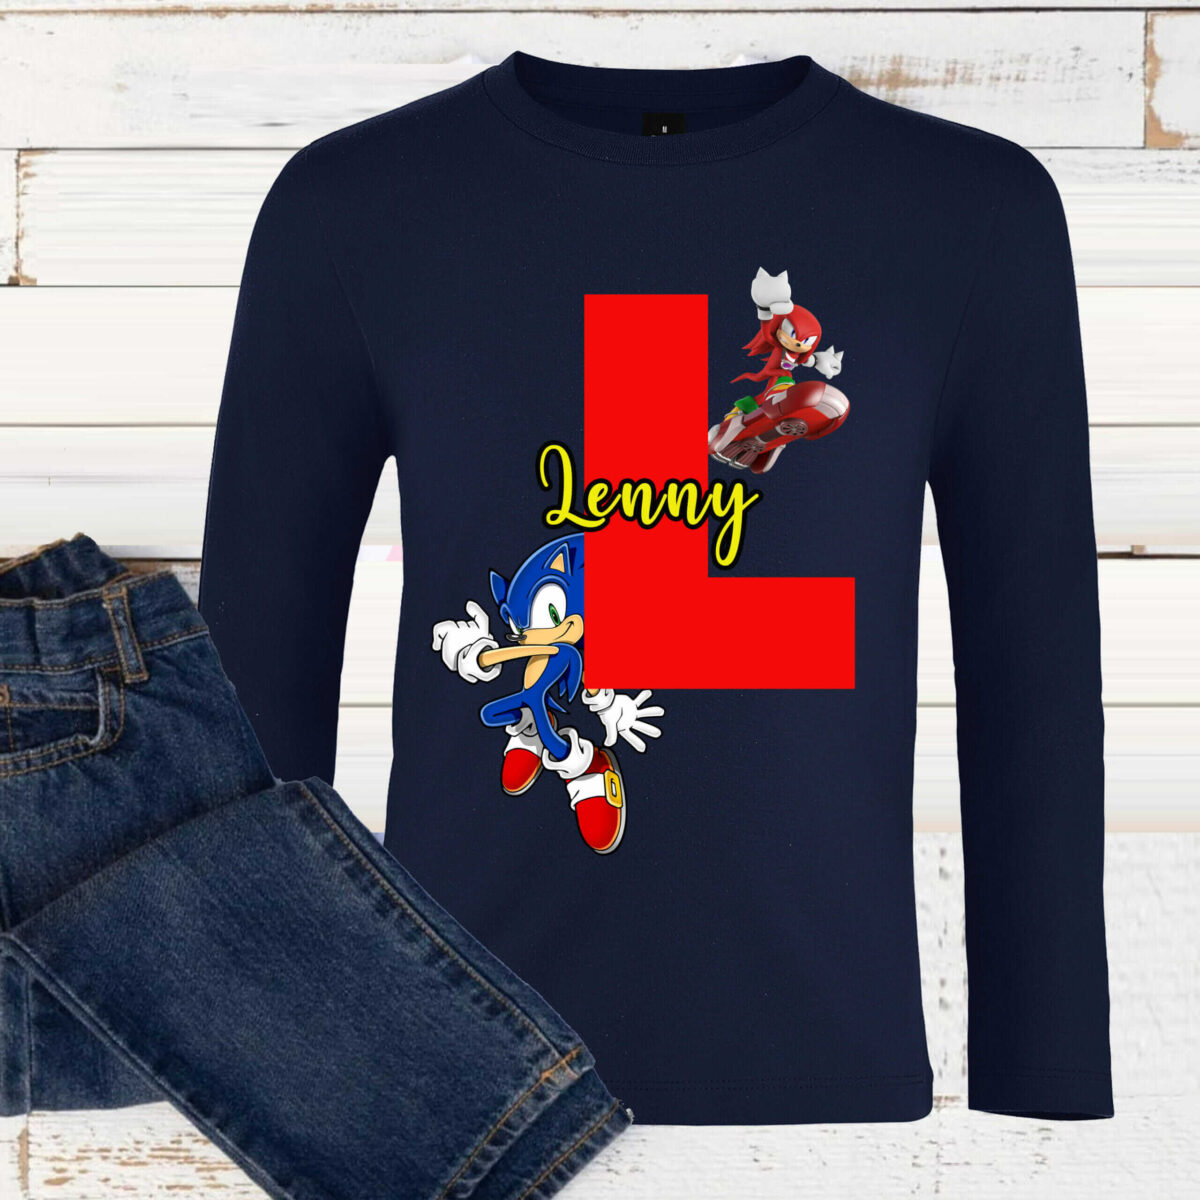 T-shirt Sonic personnalisé avec prénom et initial